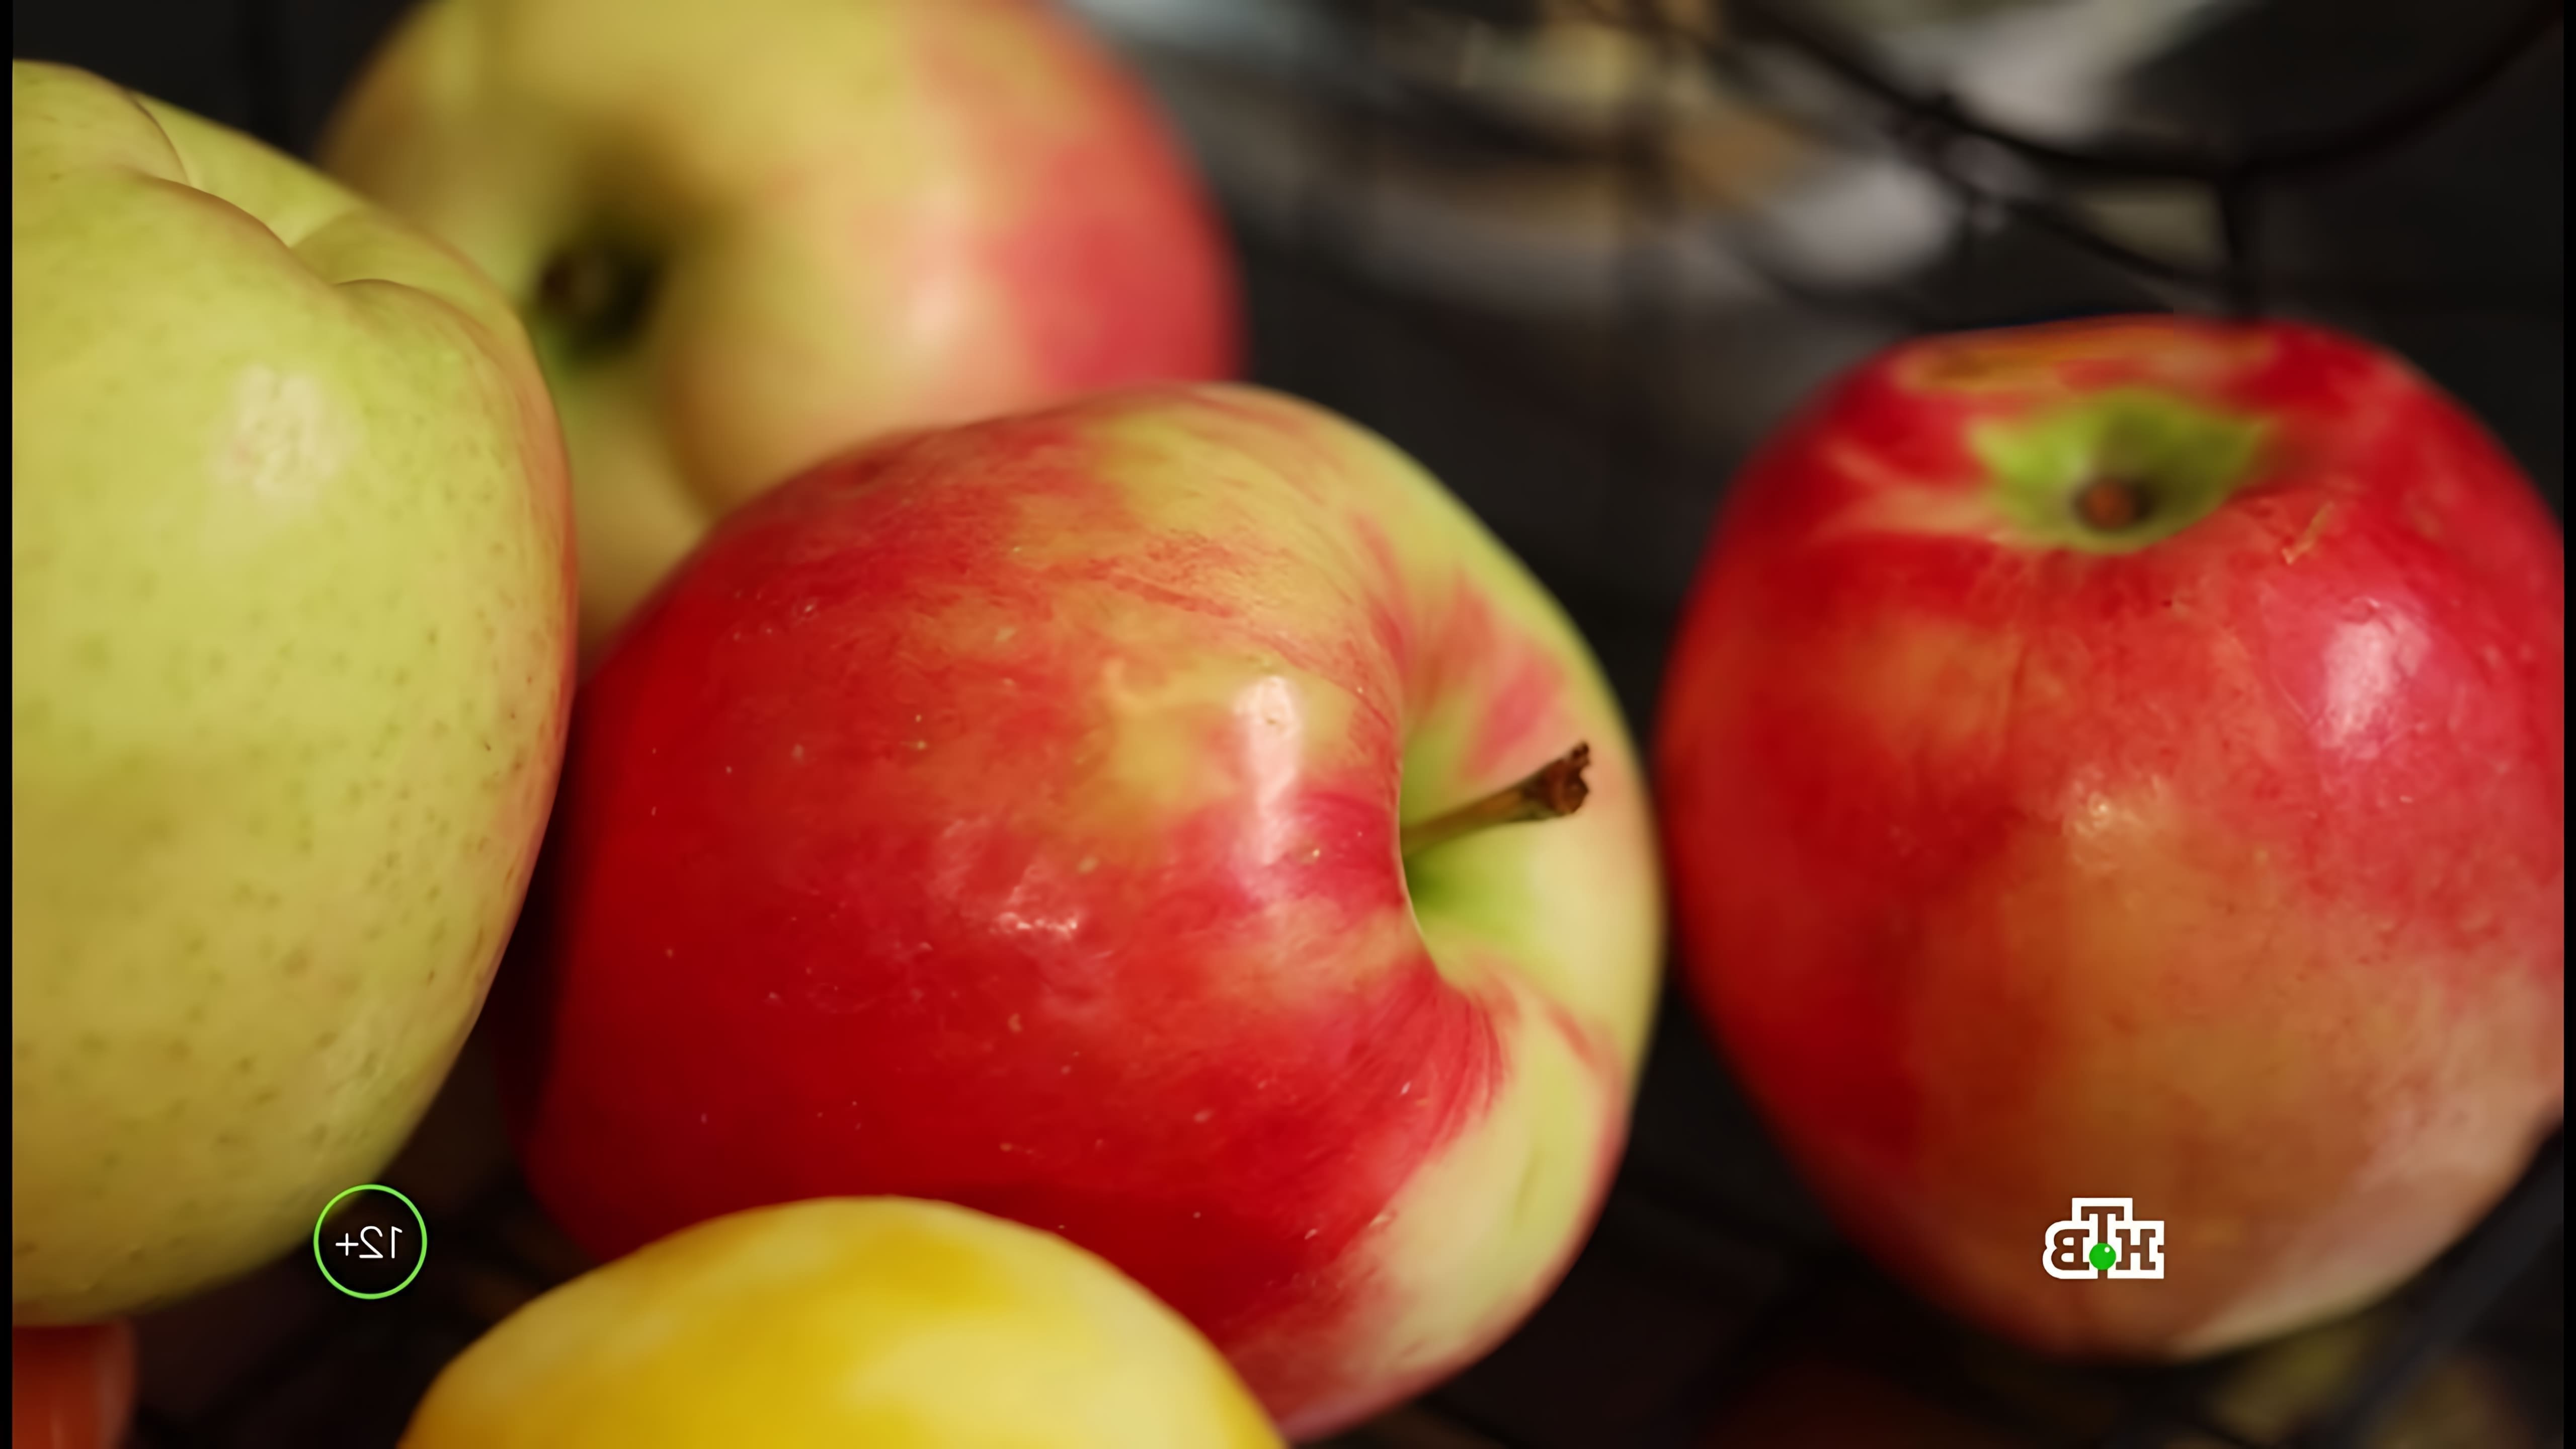 Яблоки - это вкусный и полезный фрукт, который содержит много витаминов и минералов